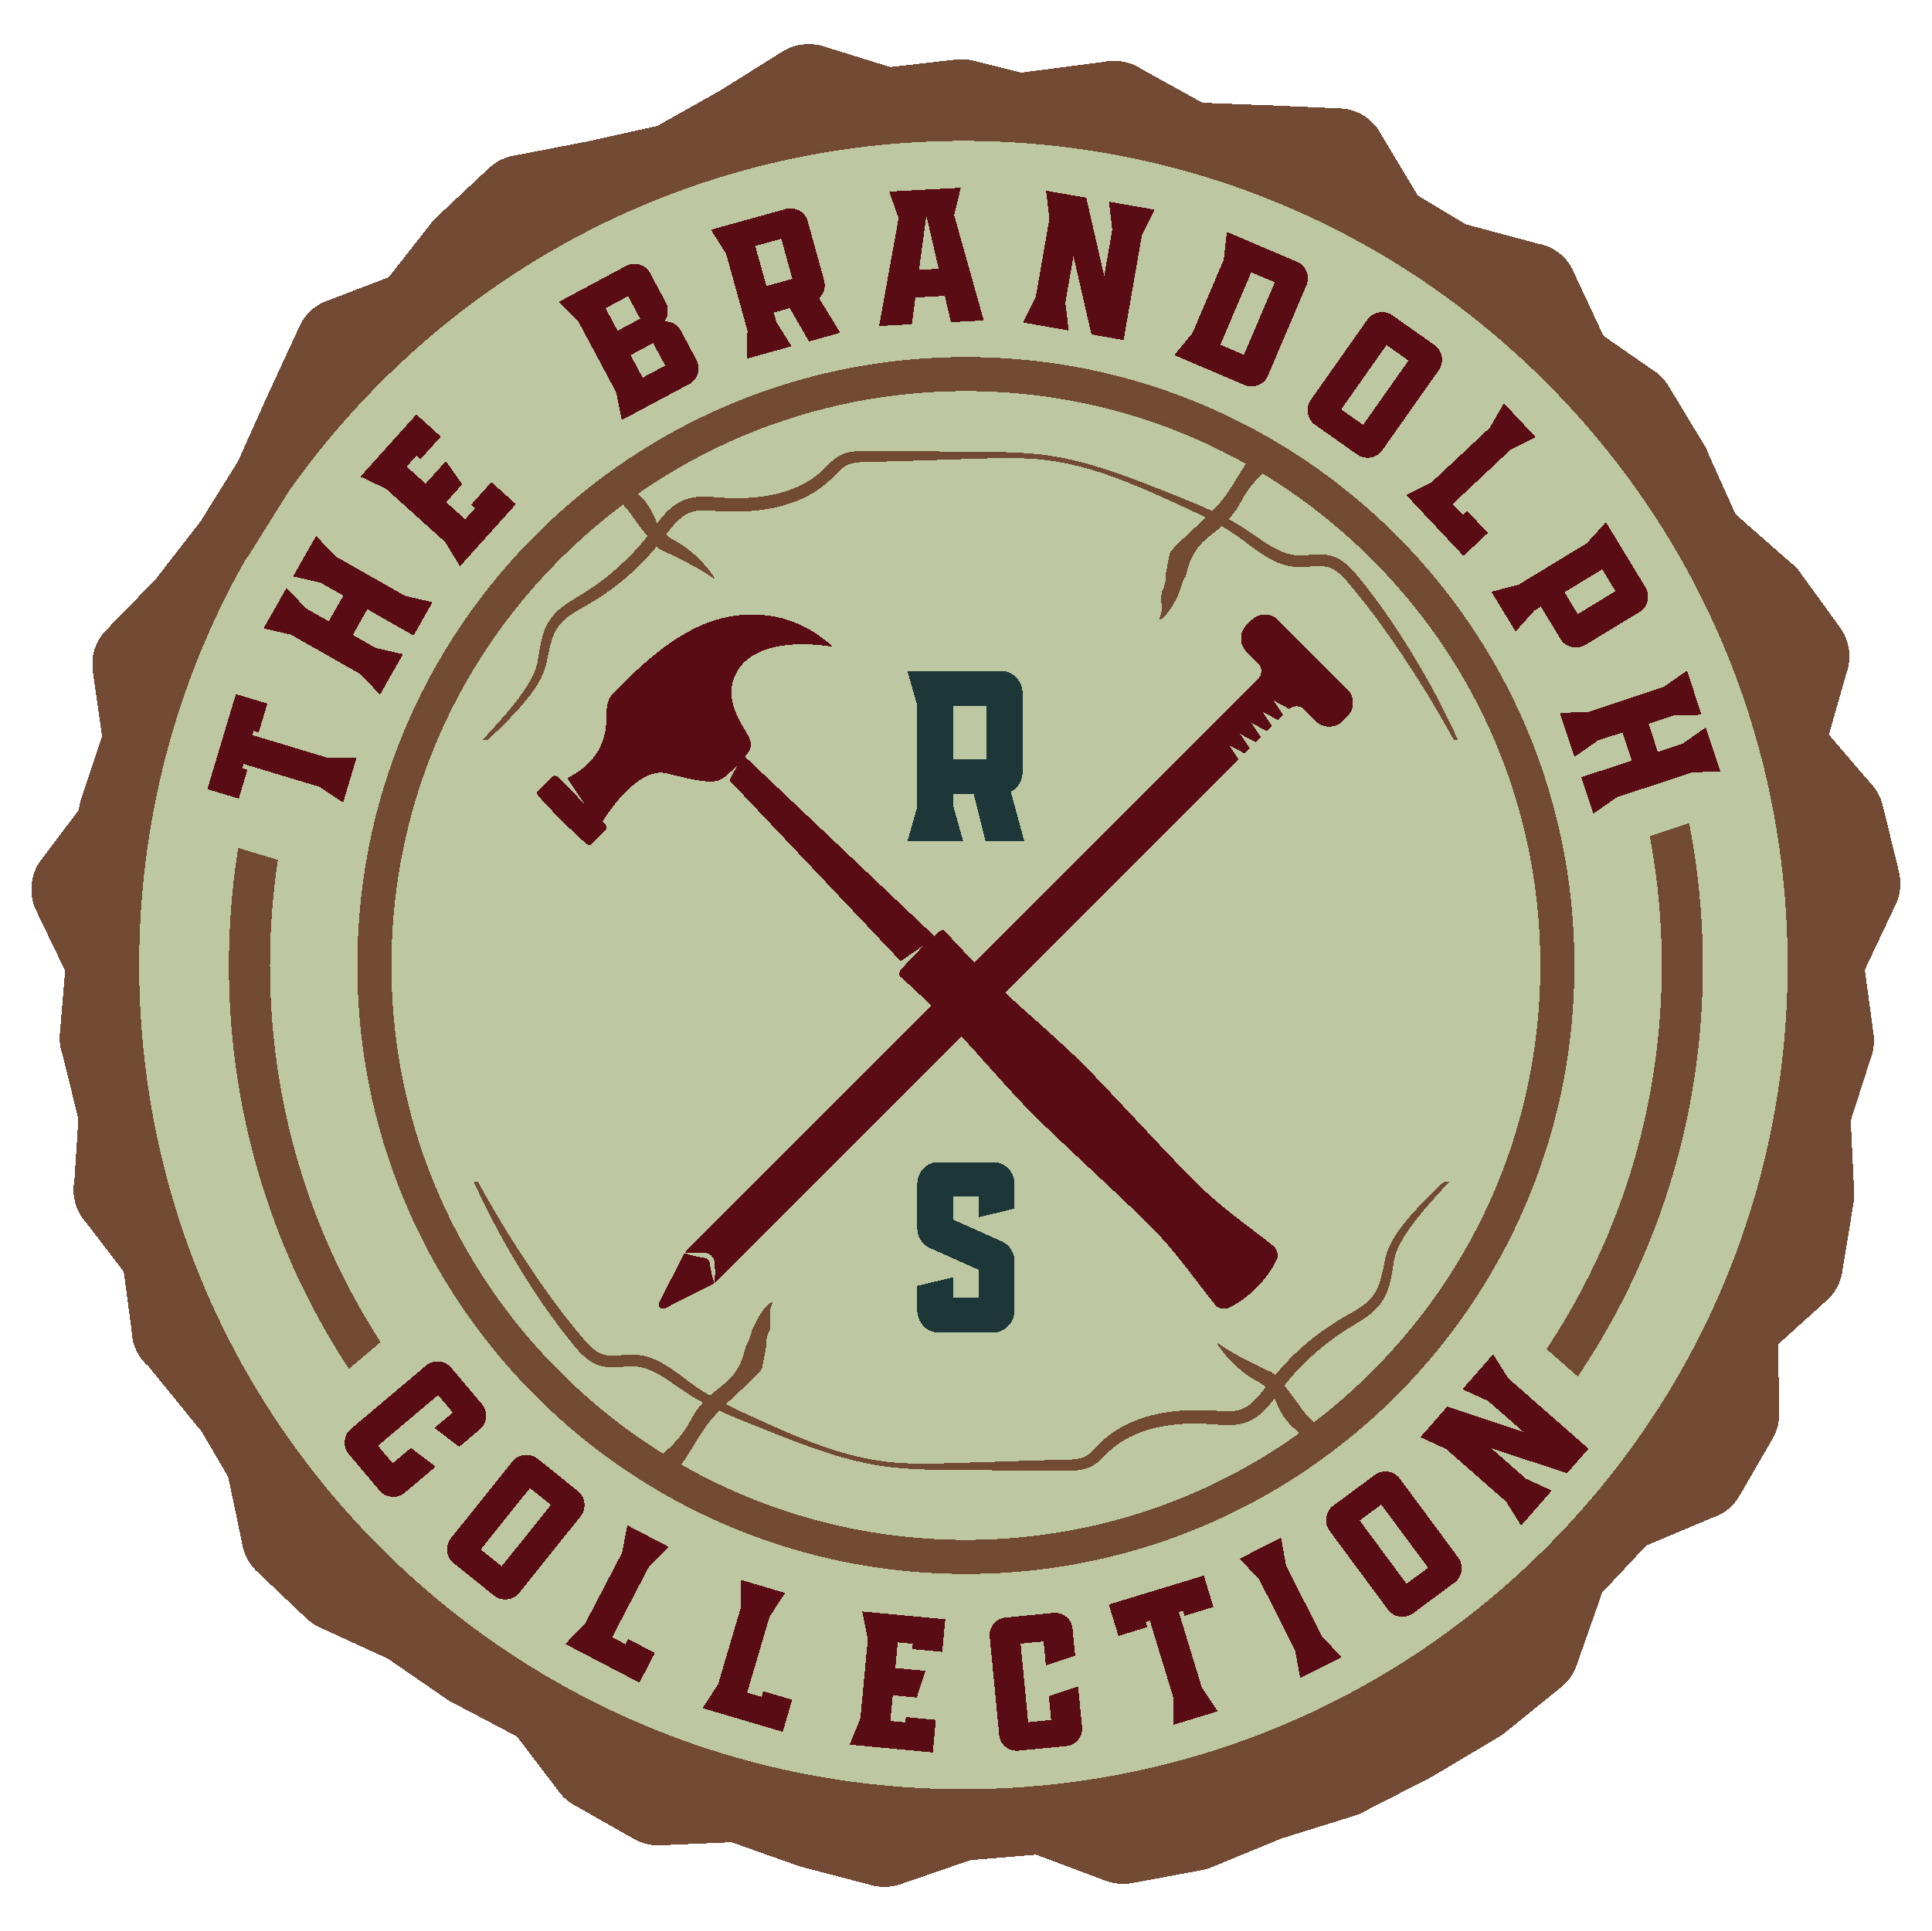 The Brandolph Collection